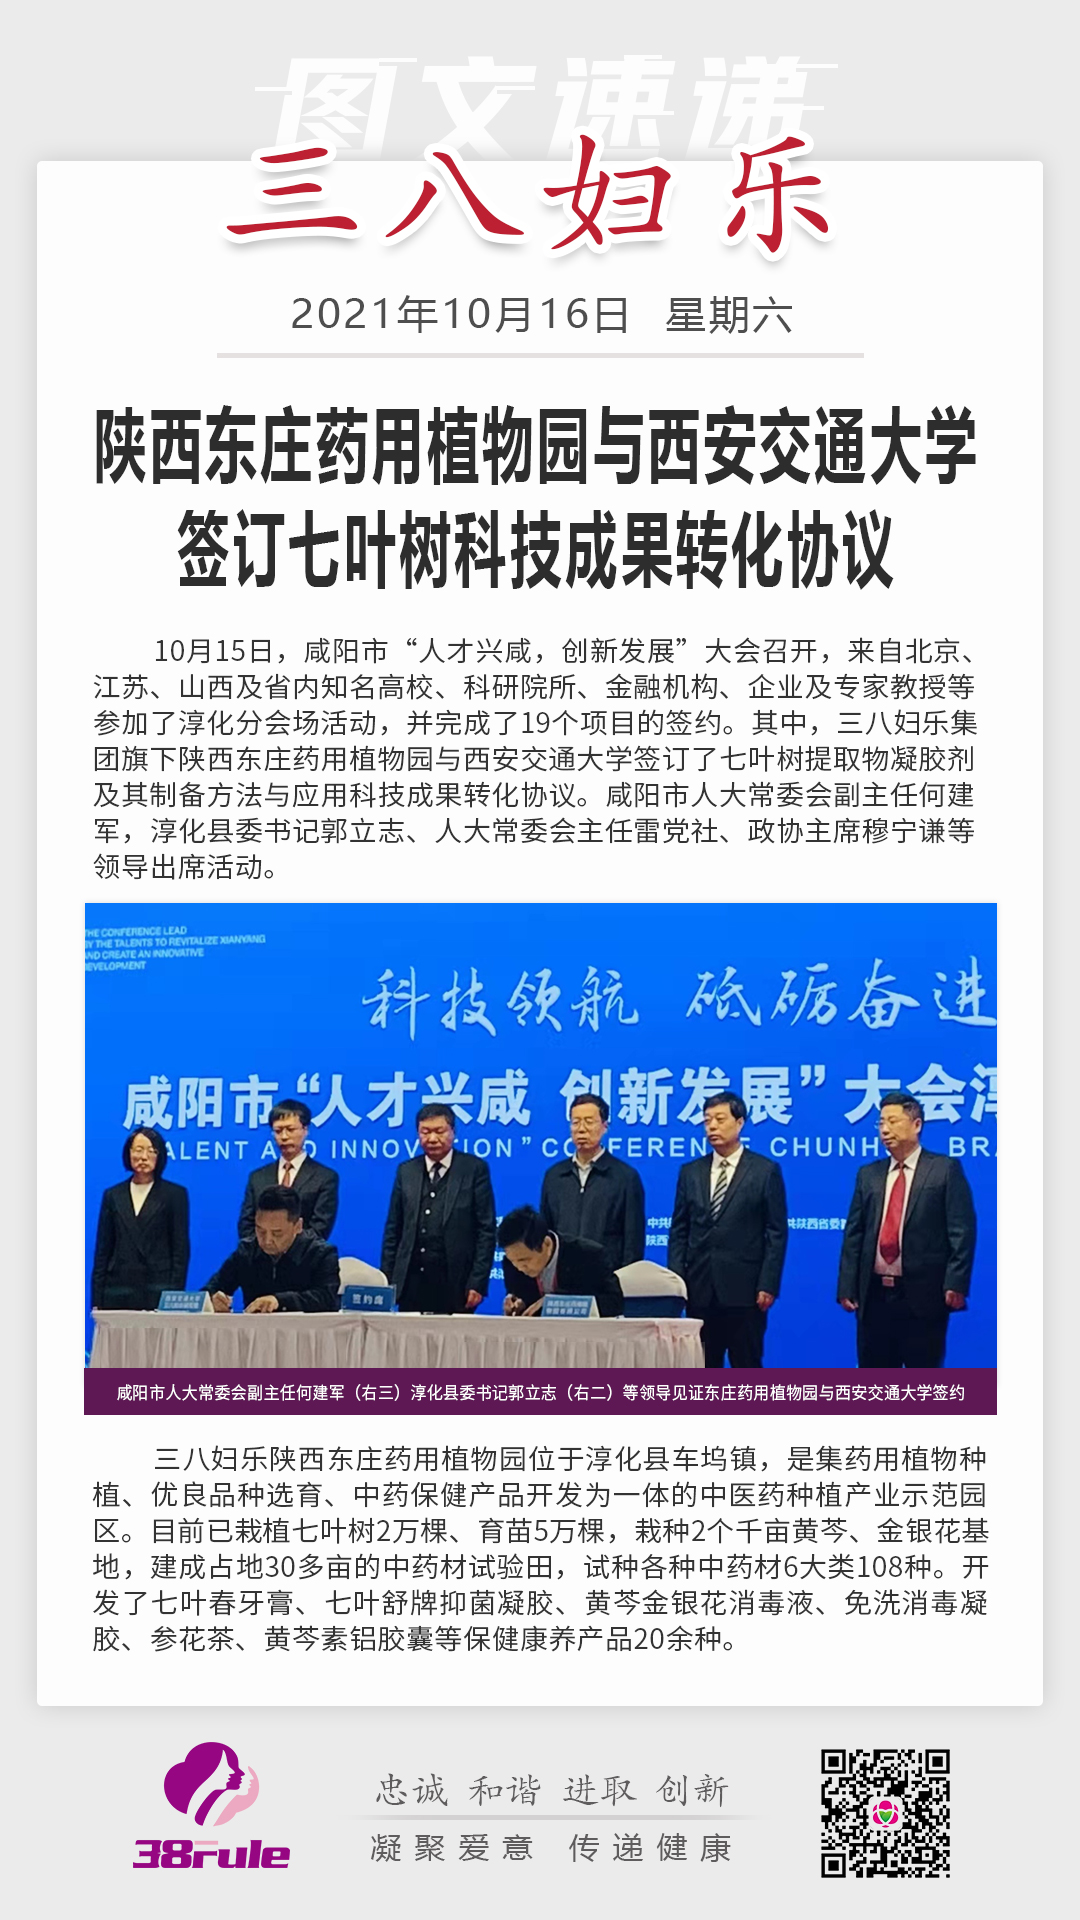 陕西东庄药用植物园与西安交通大学签订七叶树科技成果转化协议